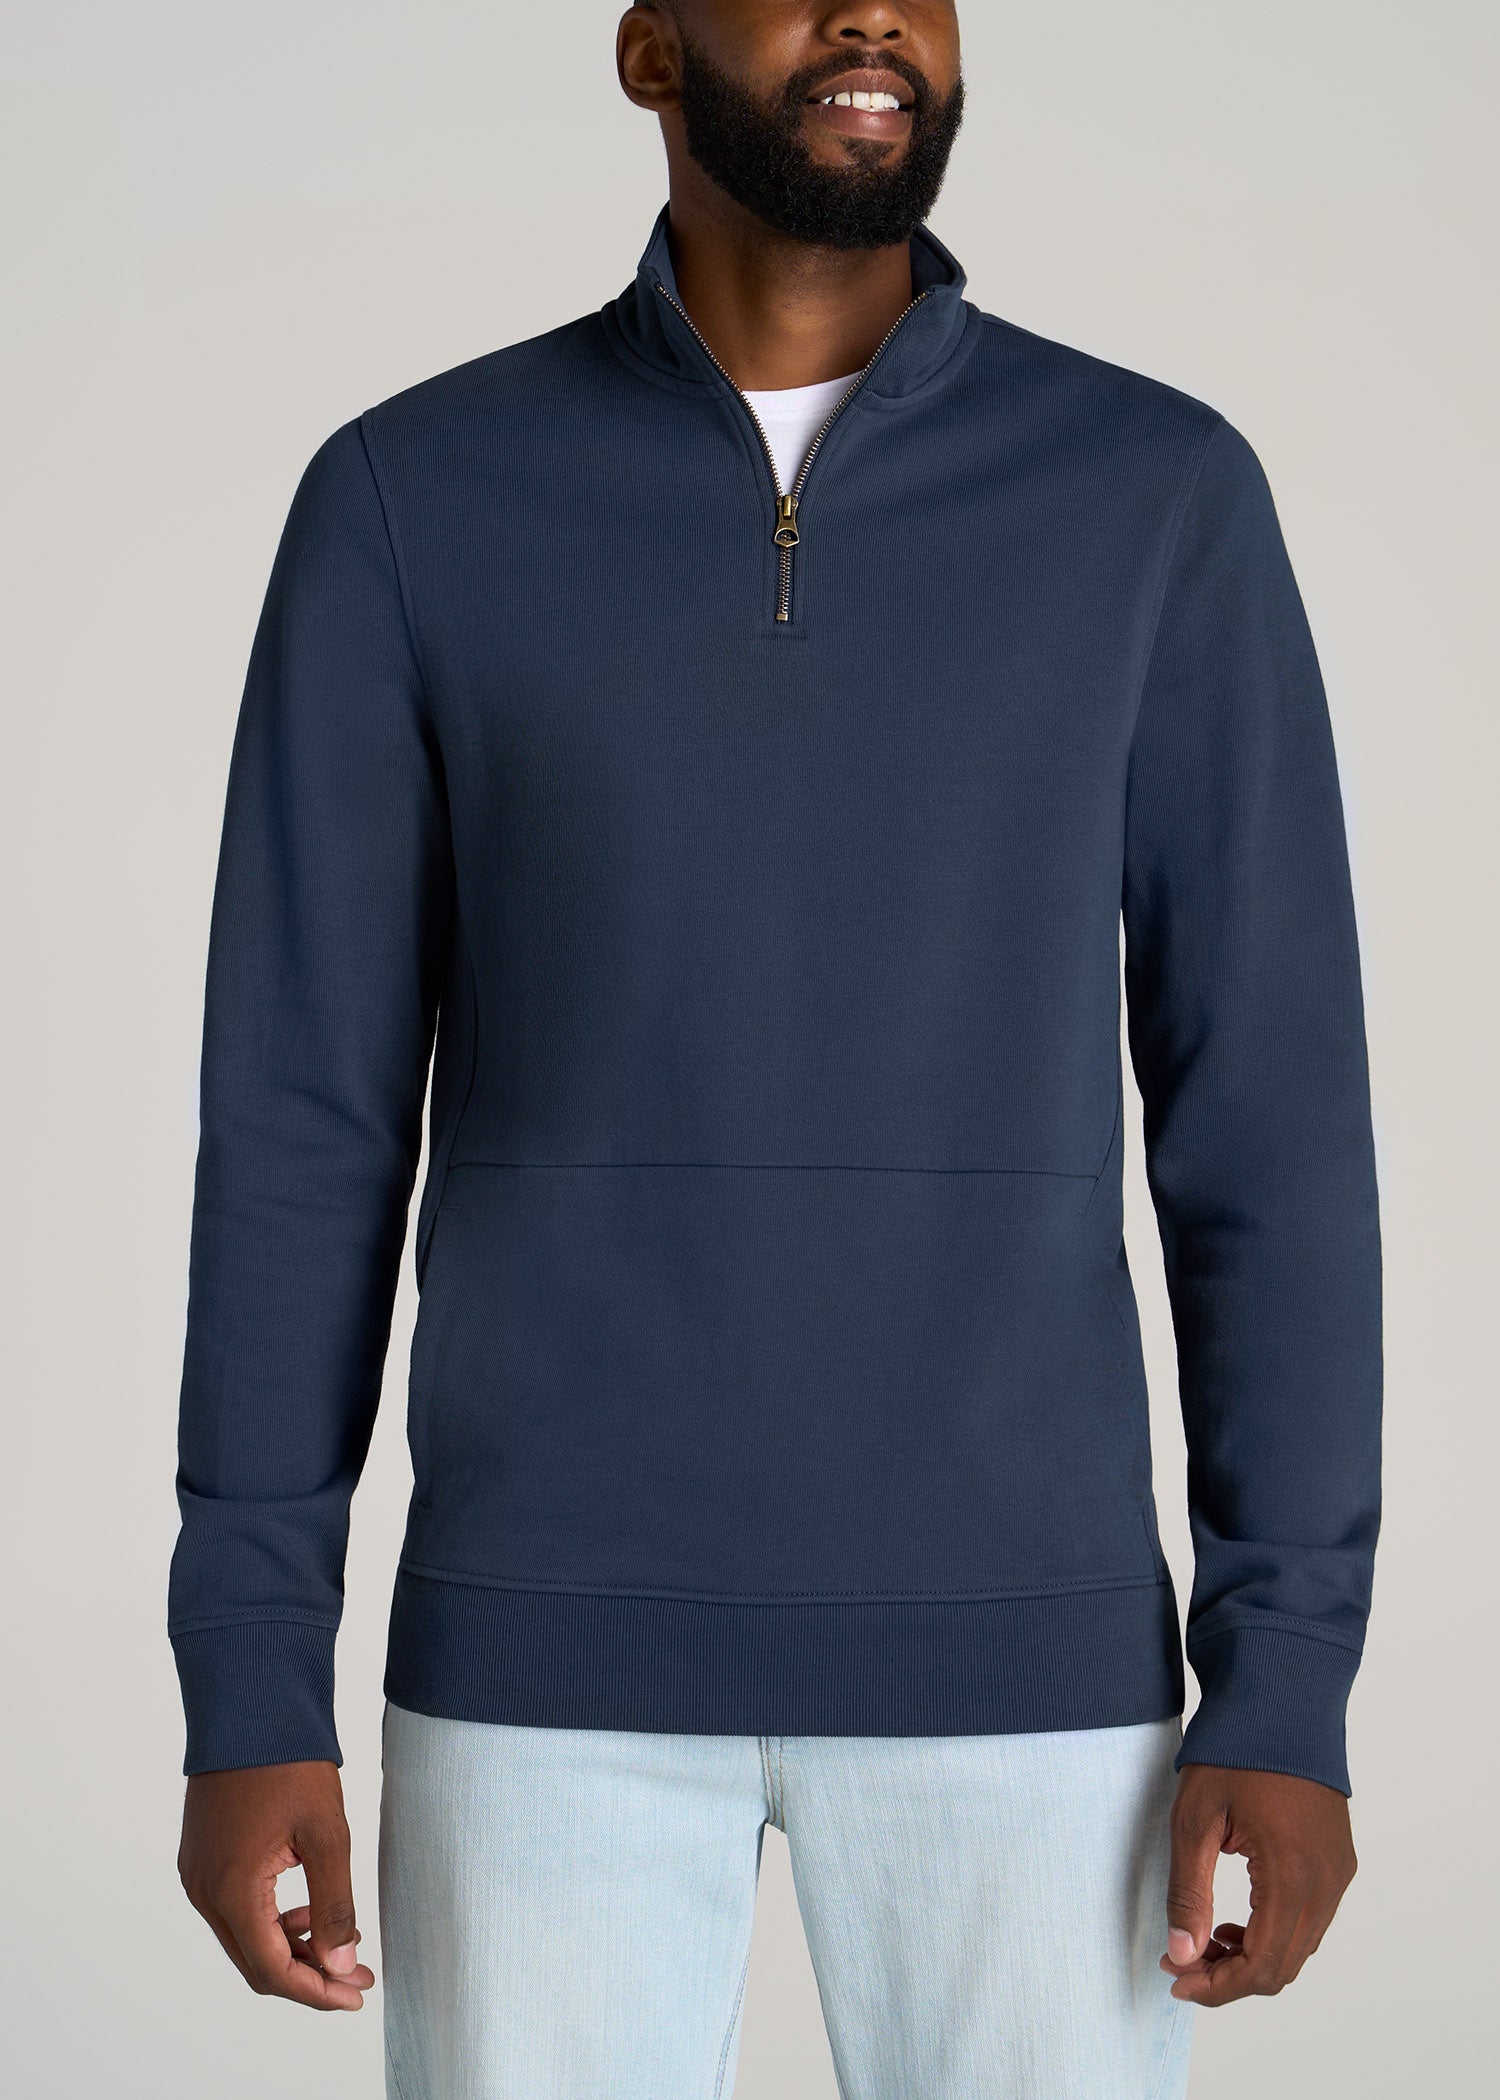 BOSS - Sweatshirt in double-knit jersey